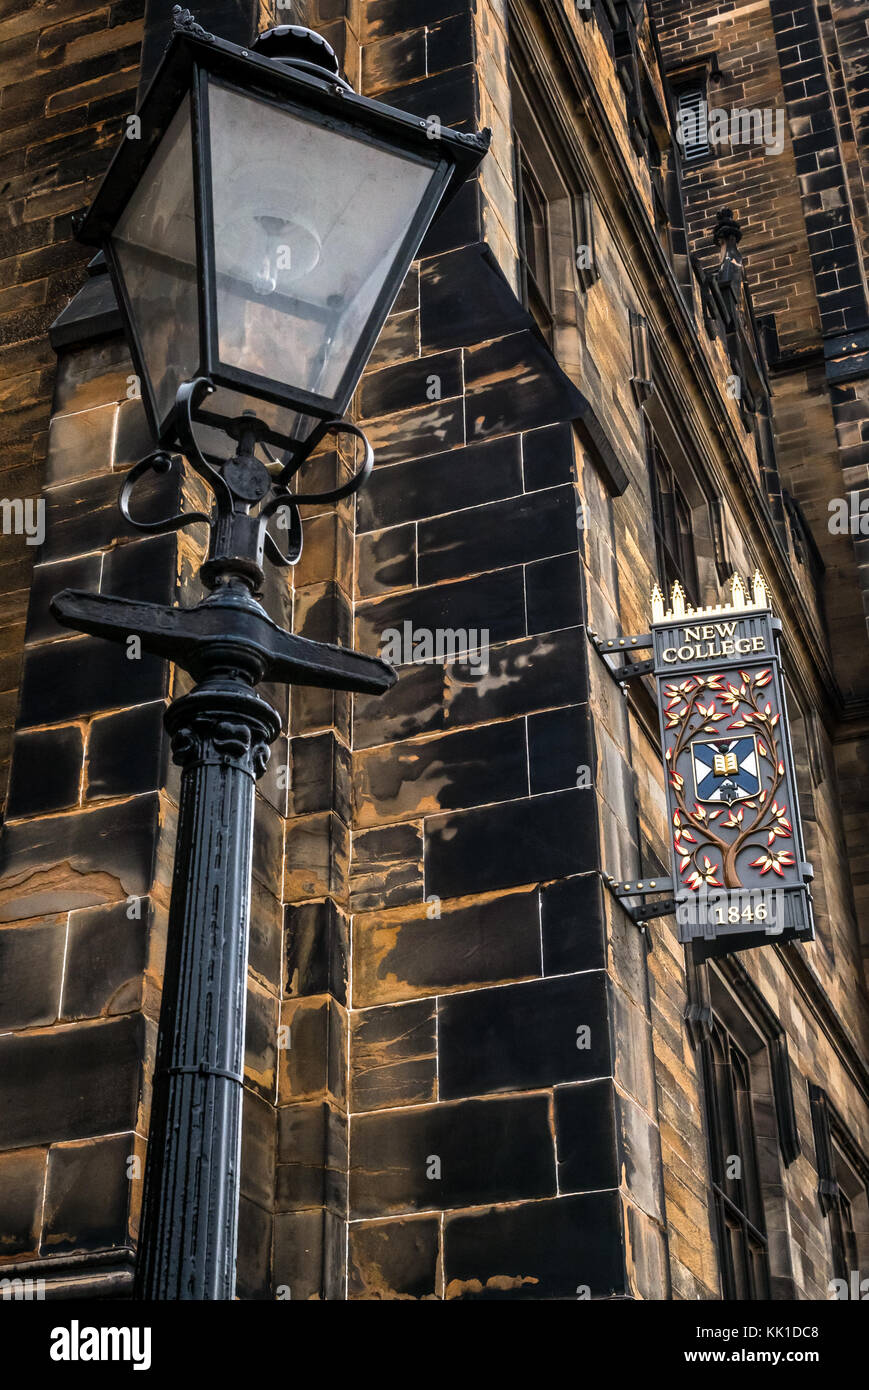 Vecchia lampada posta e decorativa 1846 segno, nuovo collegio, montaggio sul tumulo, Università di Edimburgo, precedente libera Chiesa di Scozia, Regno Unito Foto Stock